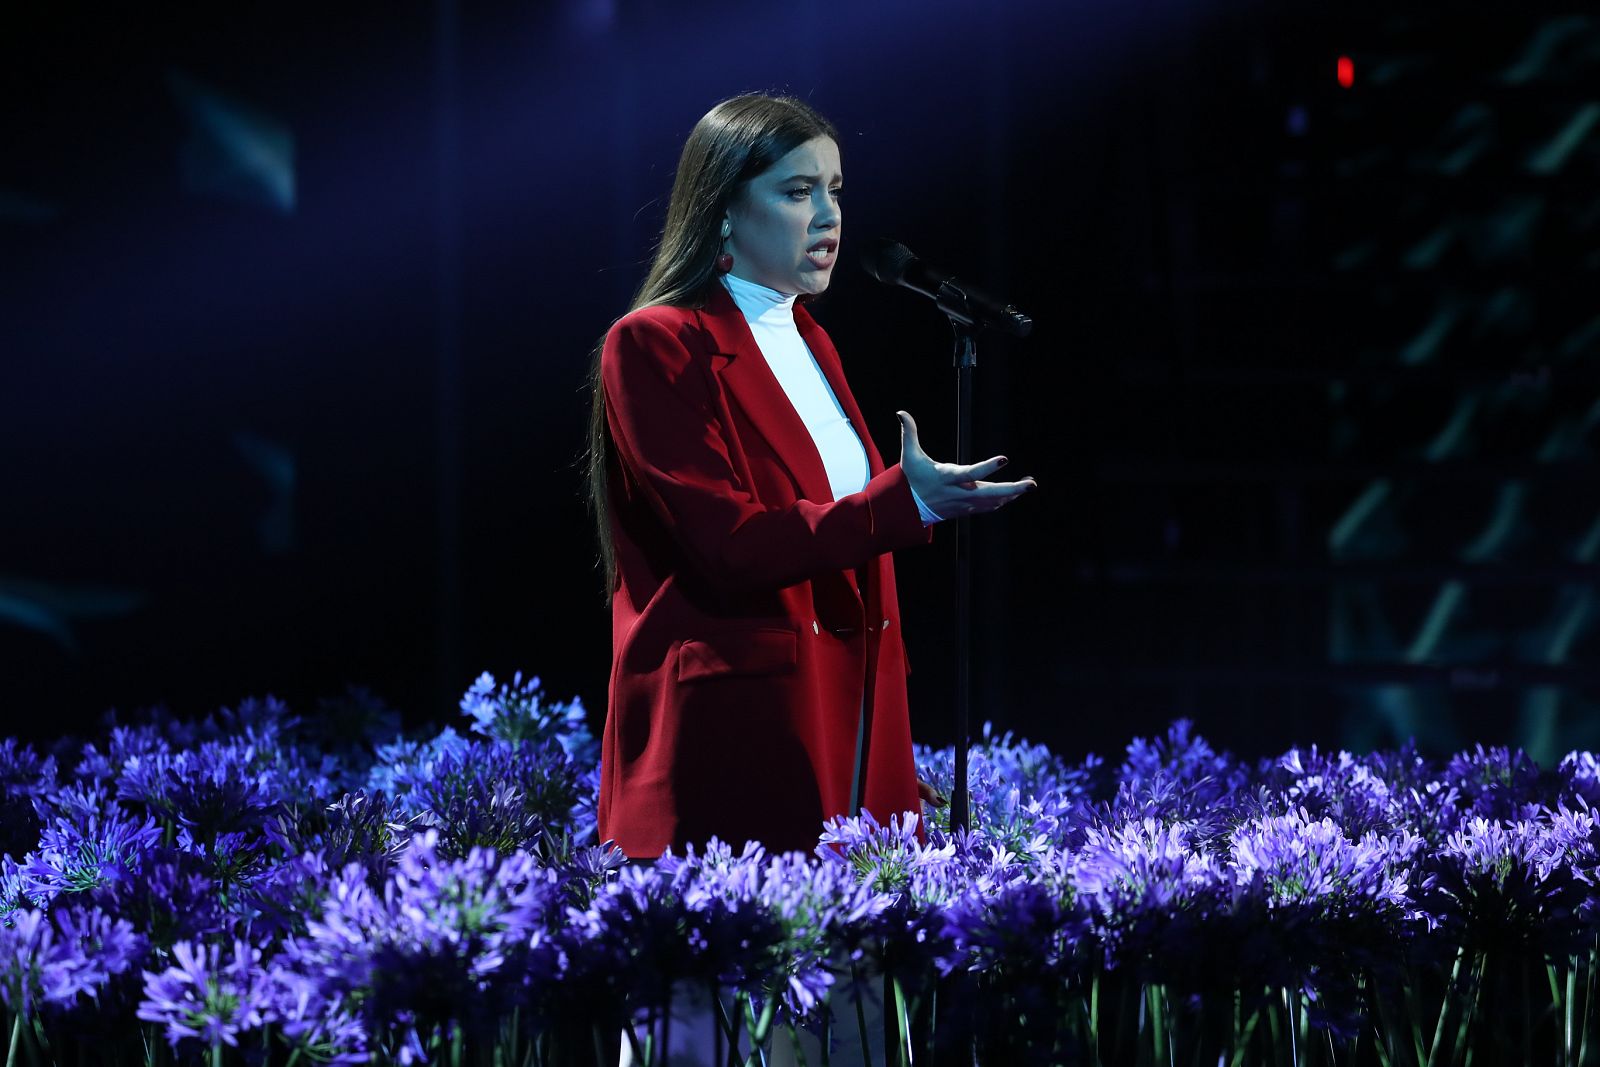 Eva canta "People Help The People", de Birdy, en la Gala Final de Operación Triunfo 2020